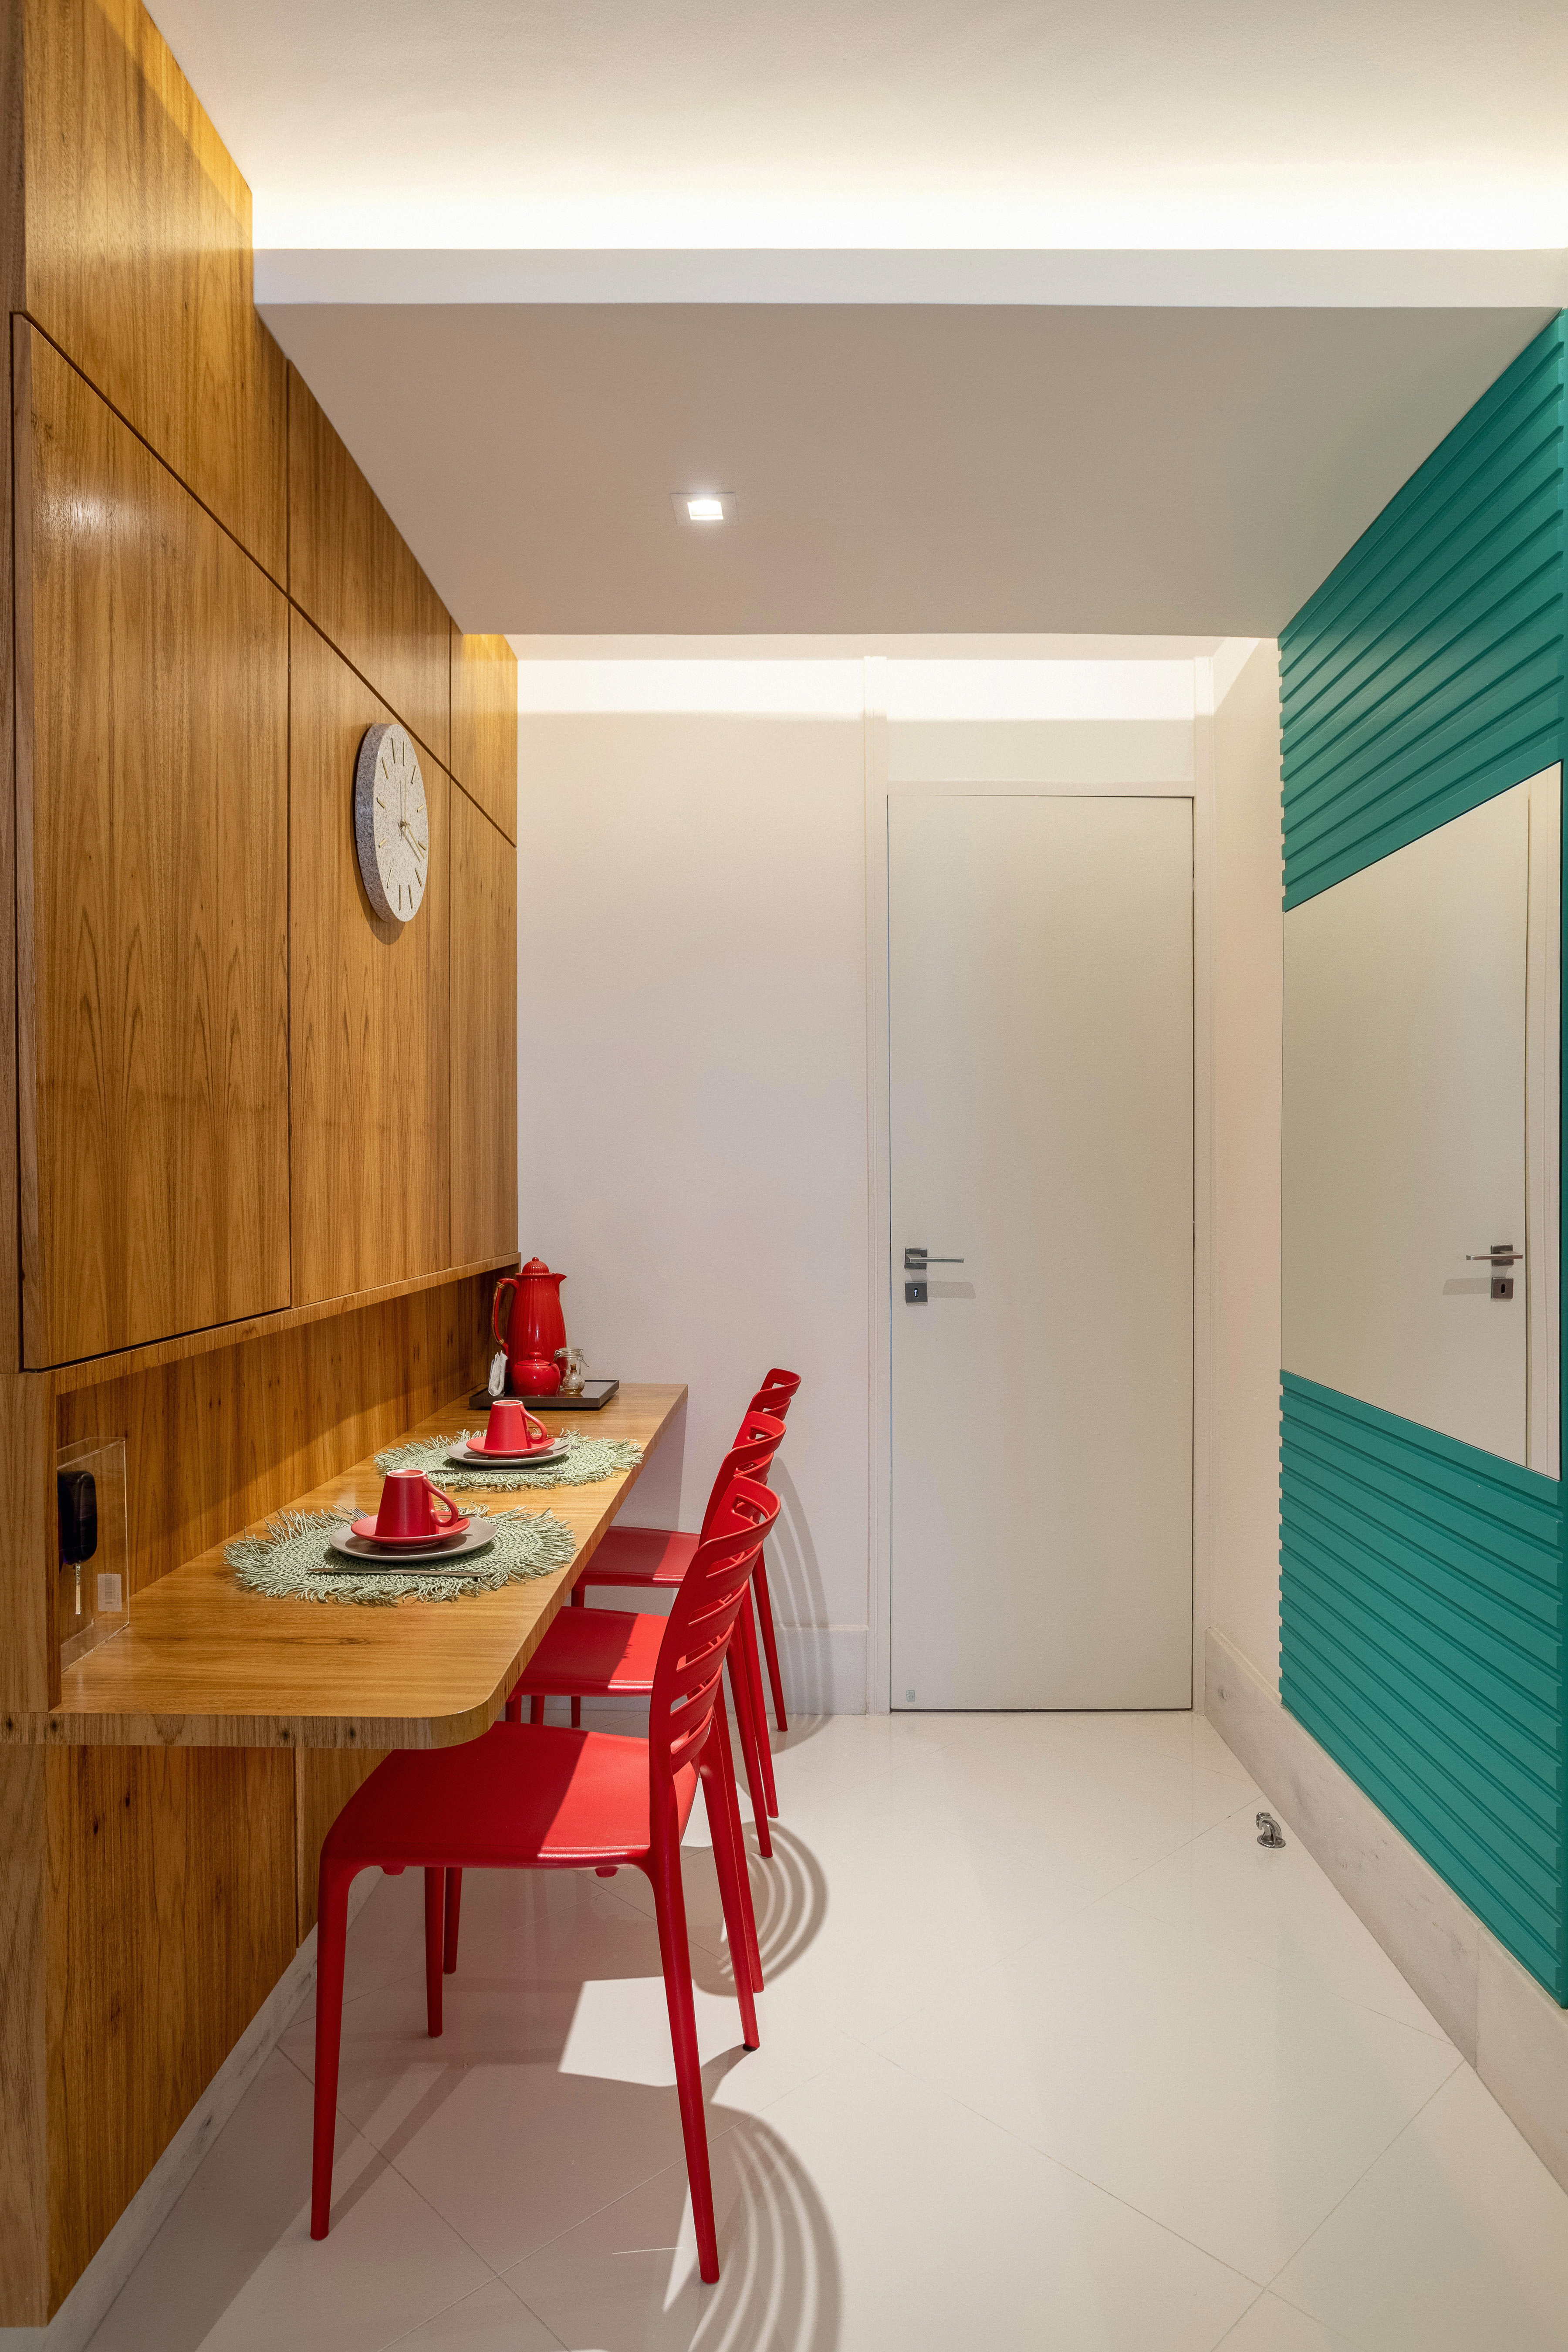 Apê ganha mezanino com home office, lavabo azul e copa de cozinha turquesa. Projeto de Ana Cano Arquitetura. Na foto, copa de cozinha com painel turquesa, parede revestida de madeira, cadeiras vermelhas.